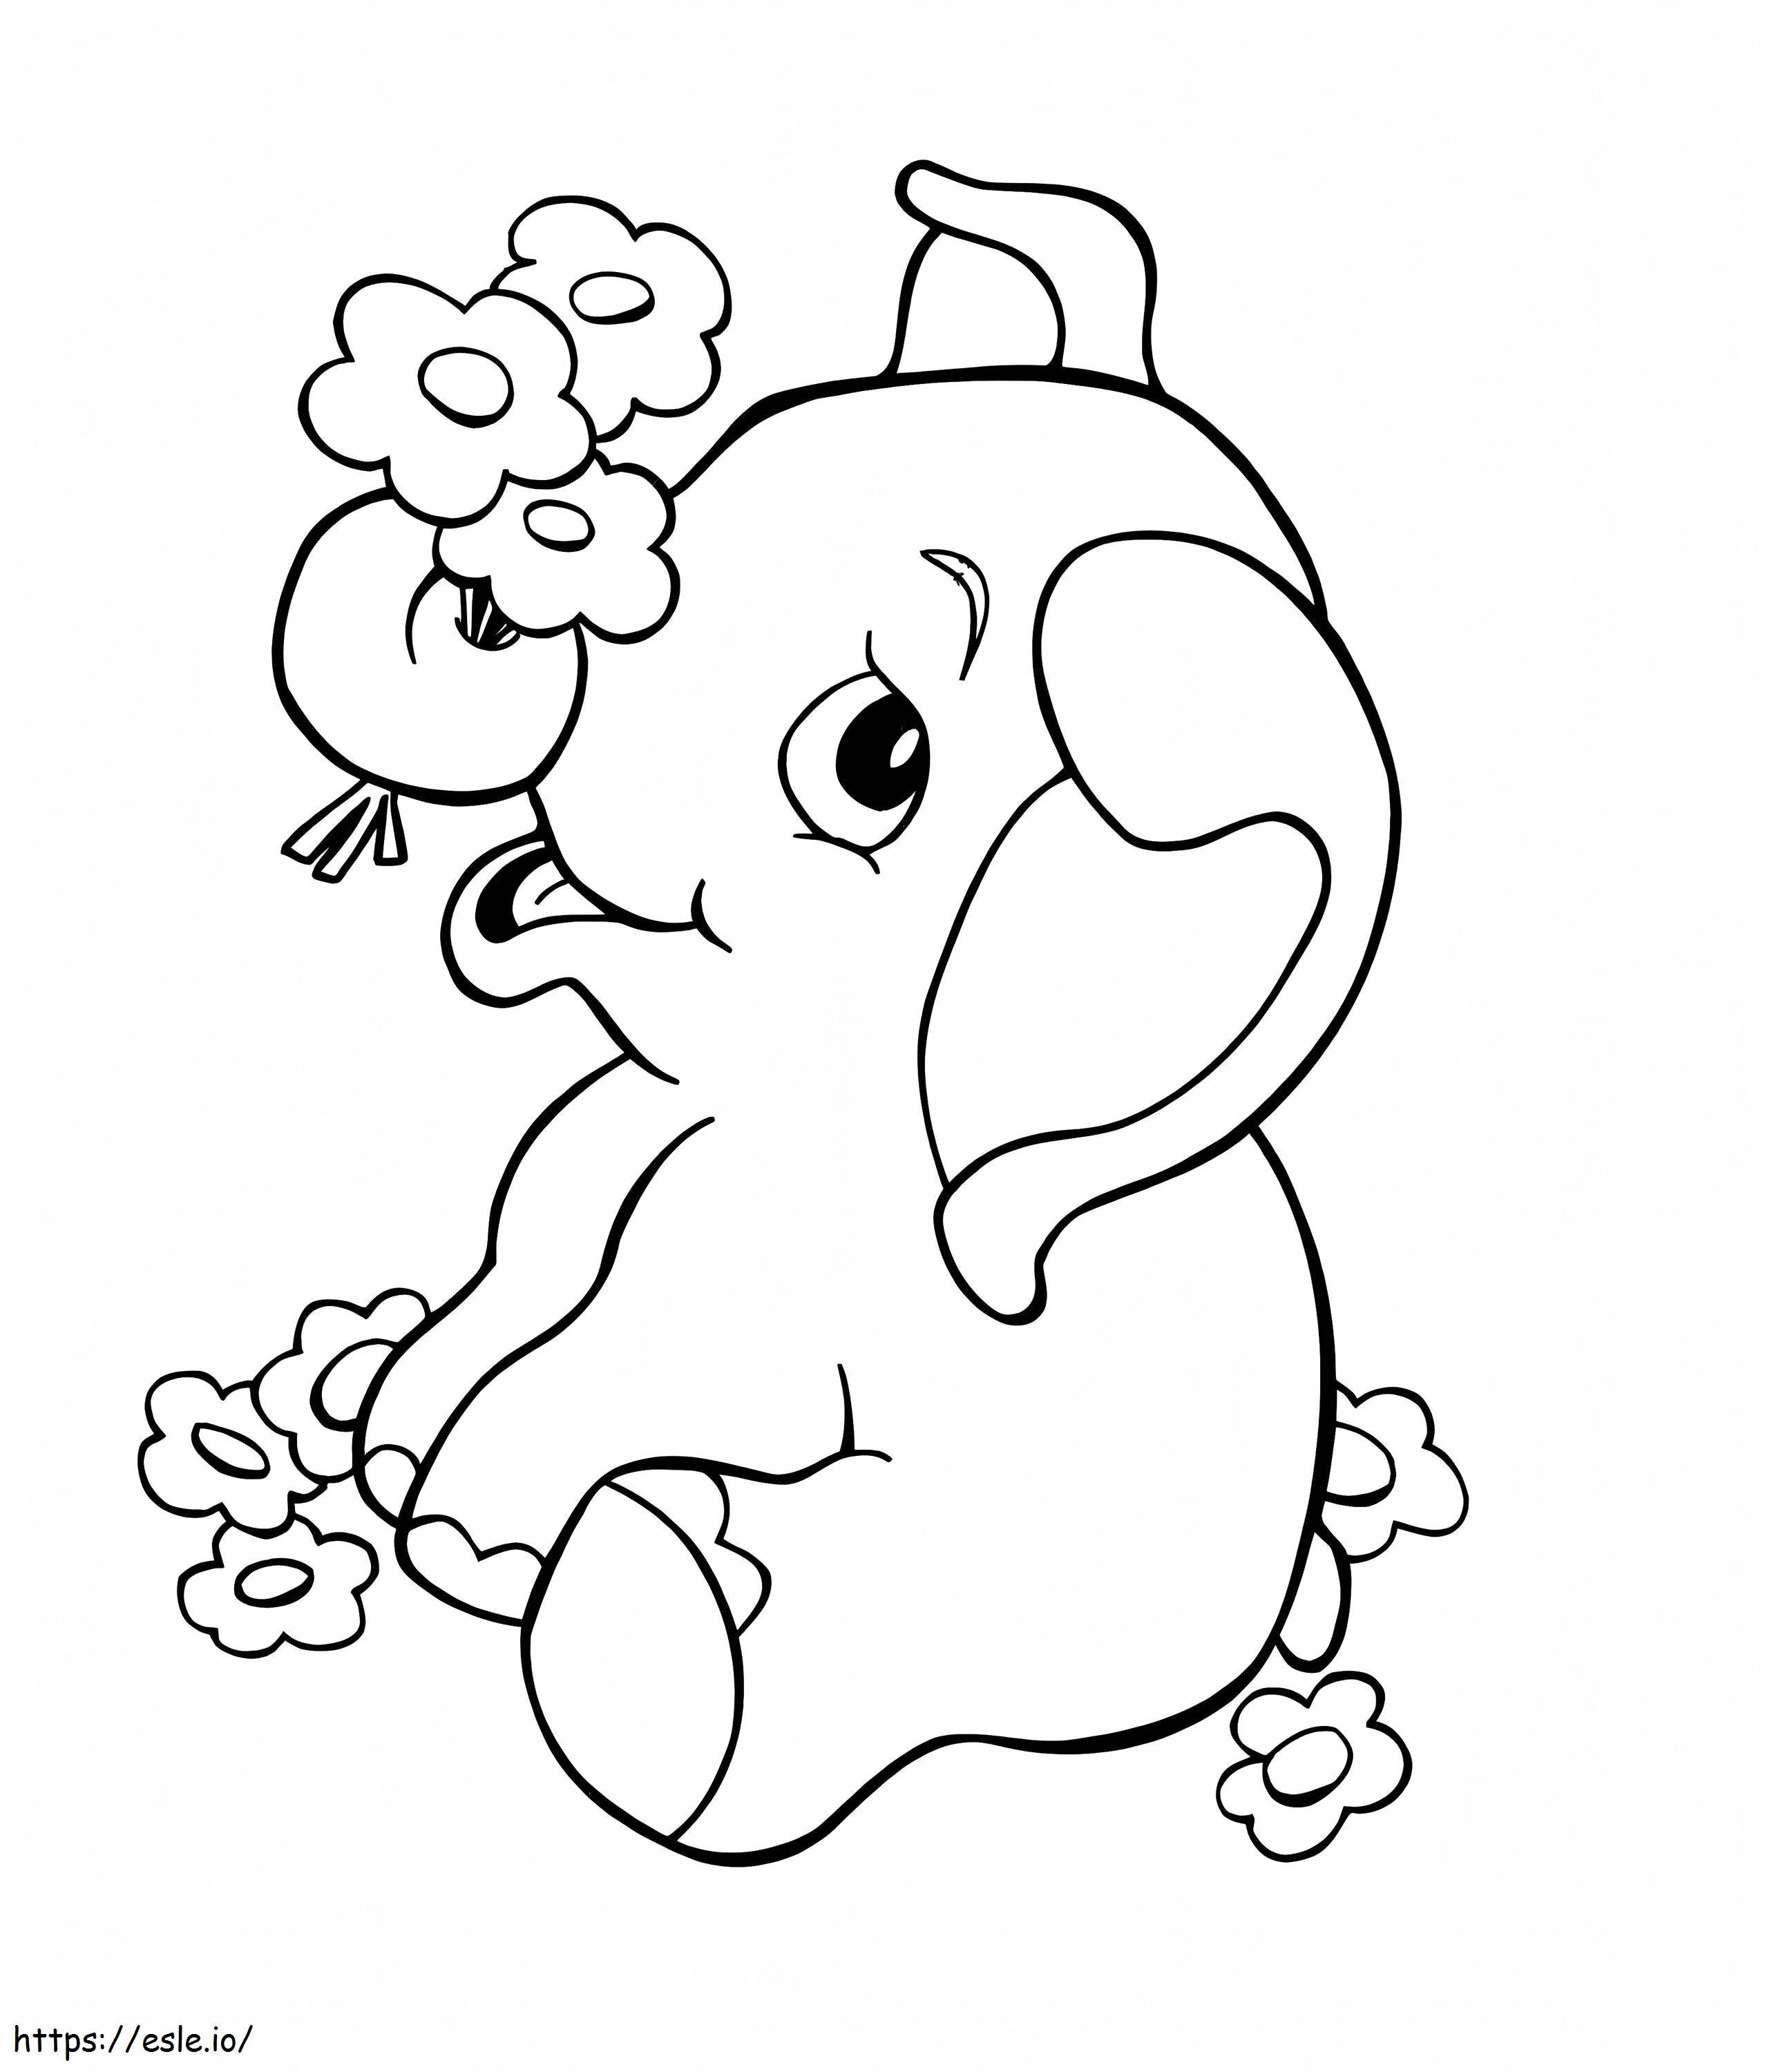 1570526314 Elefante per bambini Elefante cartone animato Miglior stampabile gratuitamente per bambini Prestiti per la ristrutturazione della casa per cattivo credito da colorare